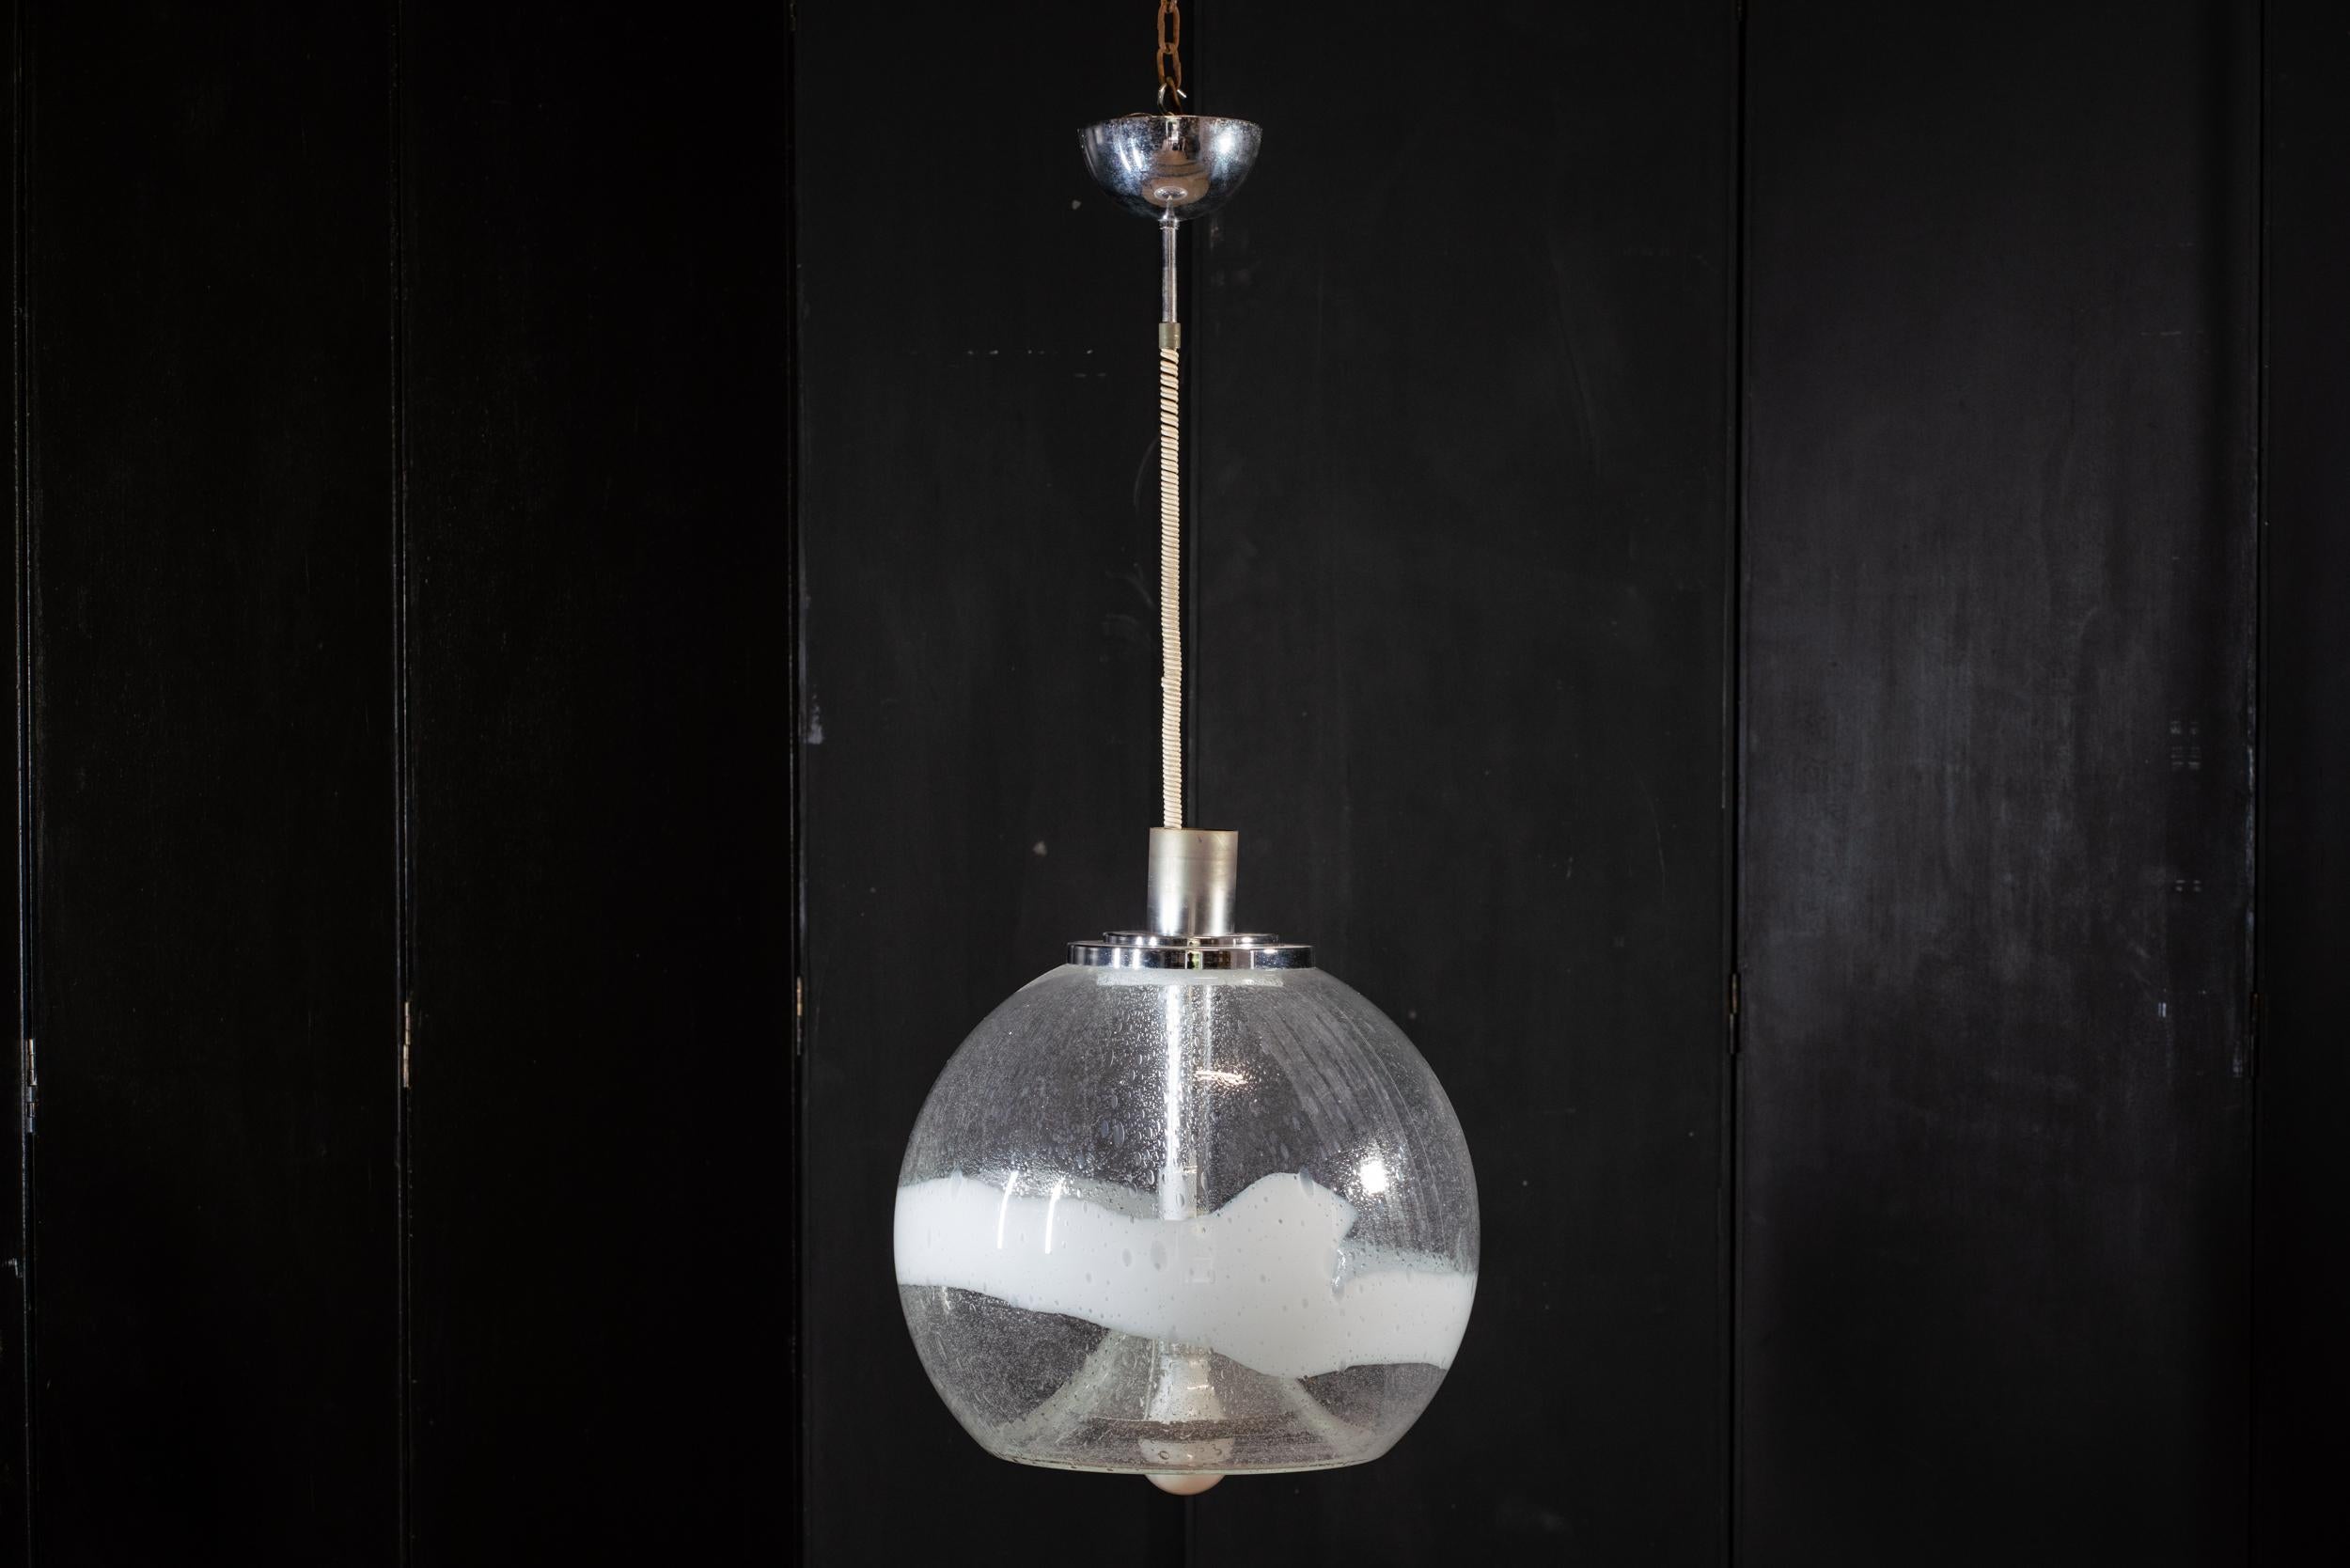 Grande lampadario a sospensione in vetro Murano (Venezia)
Il lampadario, disegnato da Ettore Fantasia Gino Poli è stato prodotto da Sotis negli anni '60 a Murano, Italia
La lavorazione del vetro, soffiato a mano, comprende il trattamento 